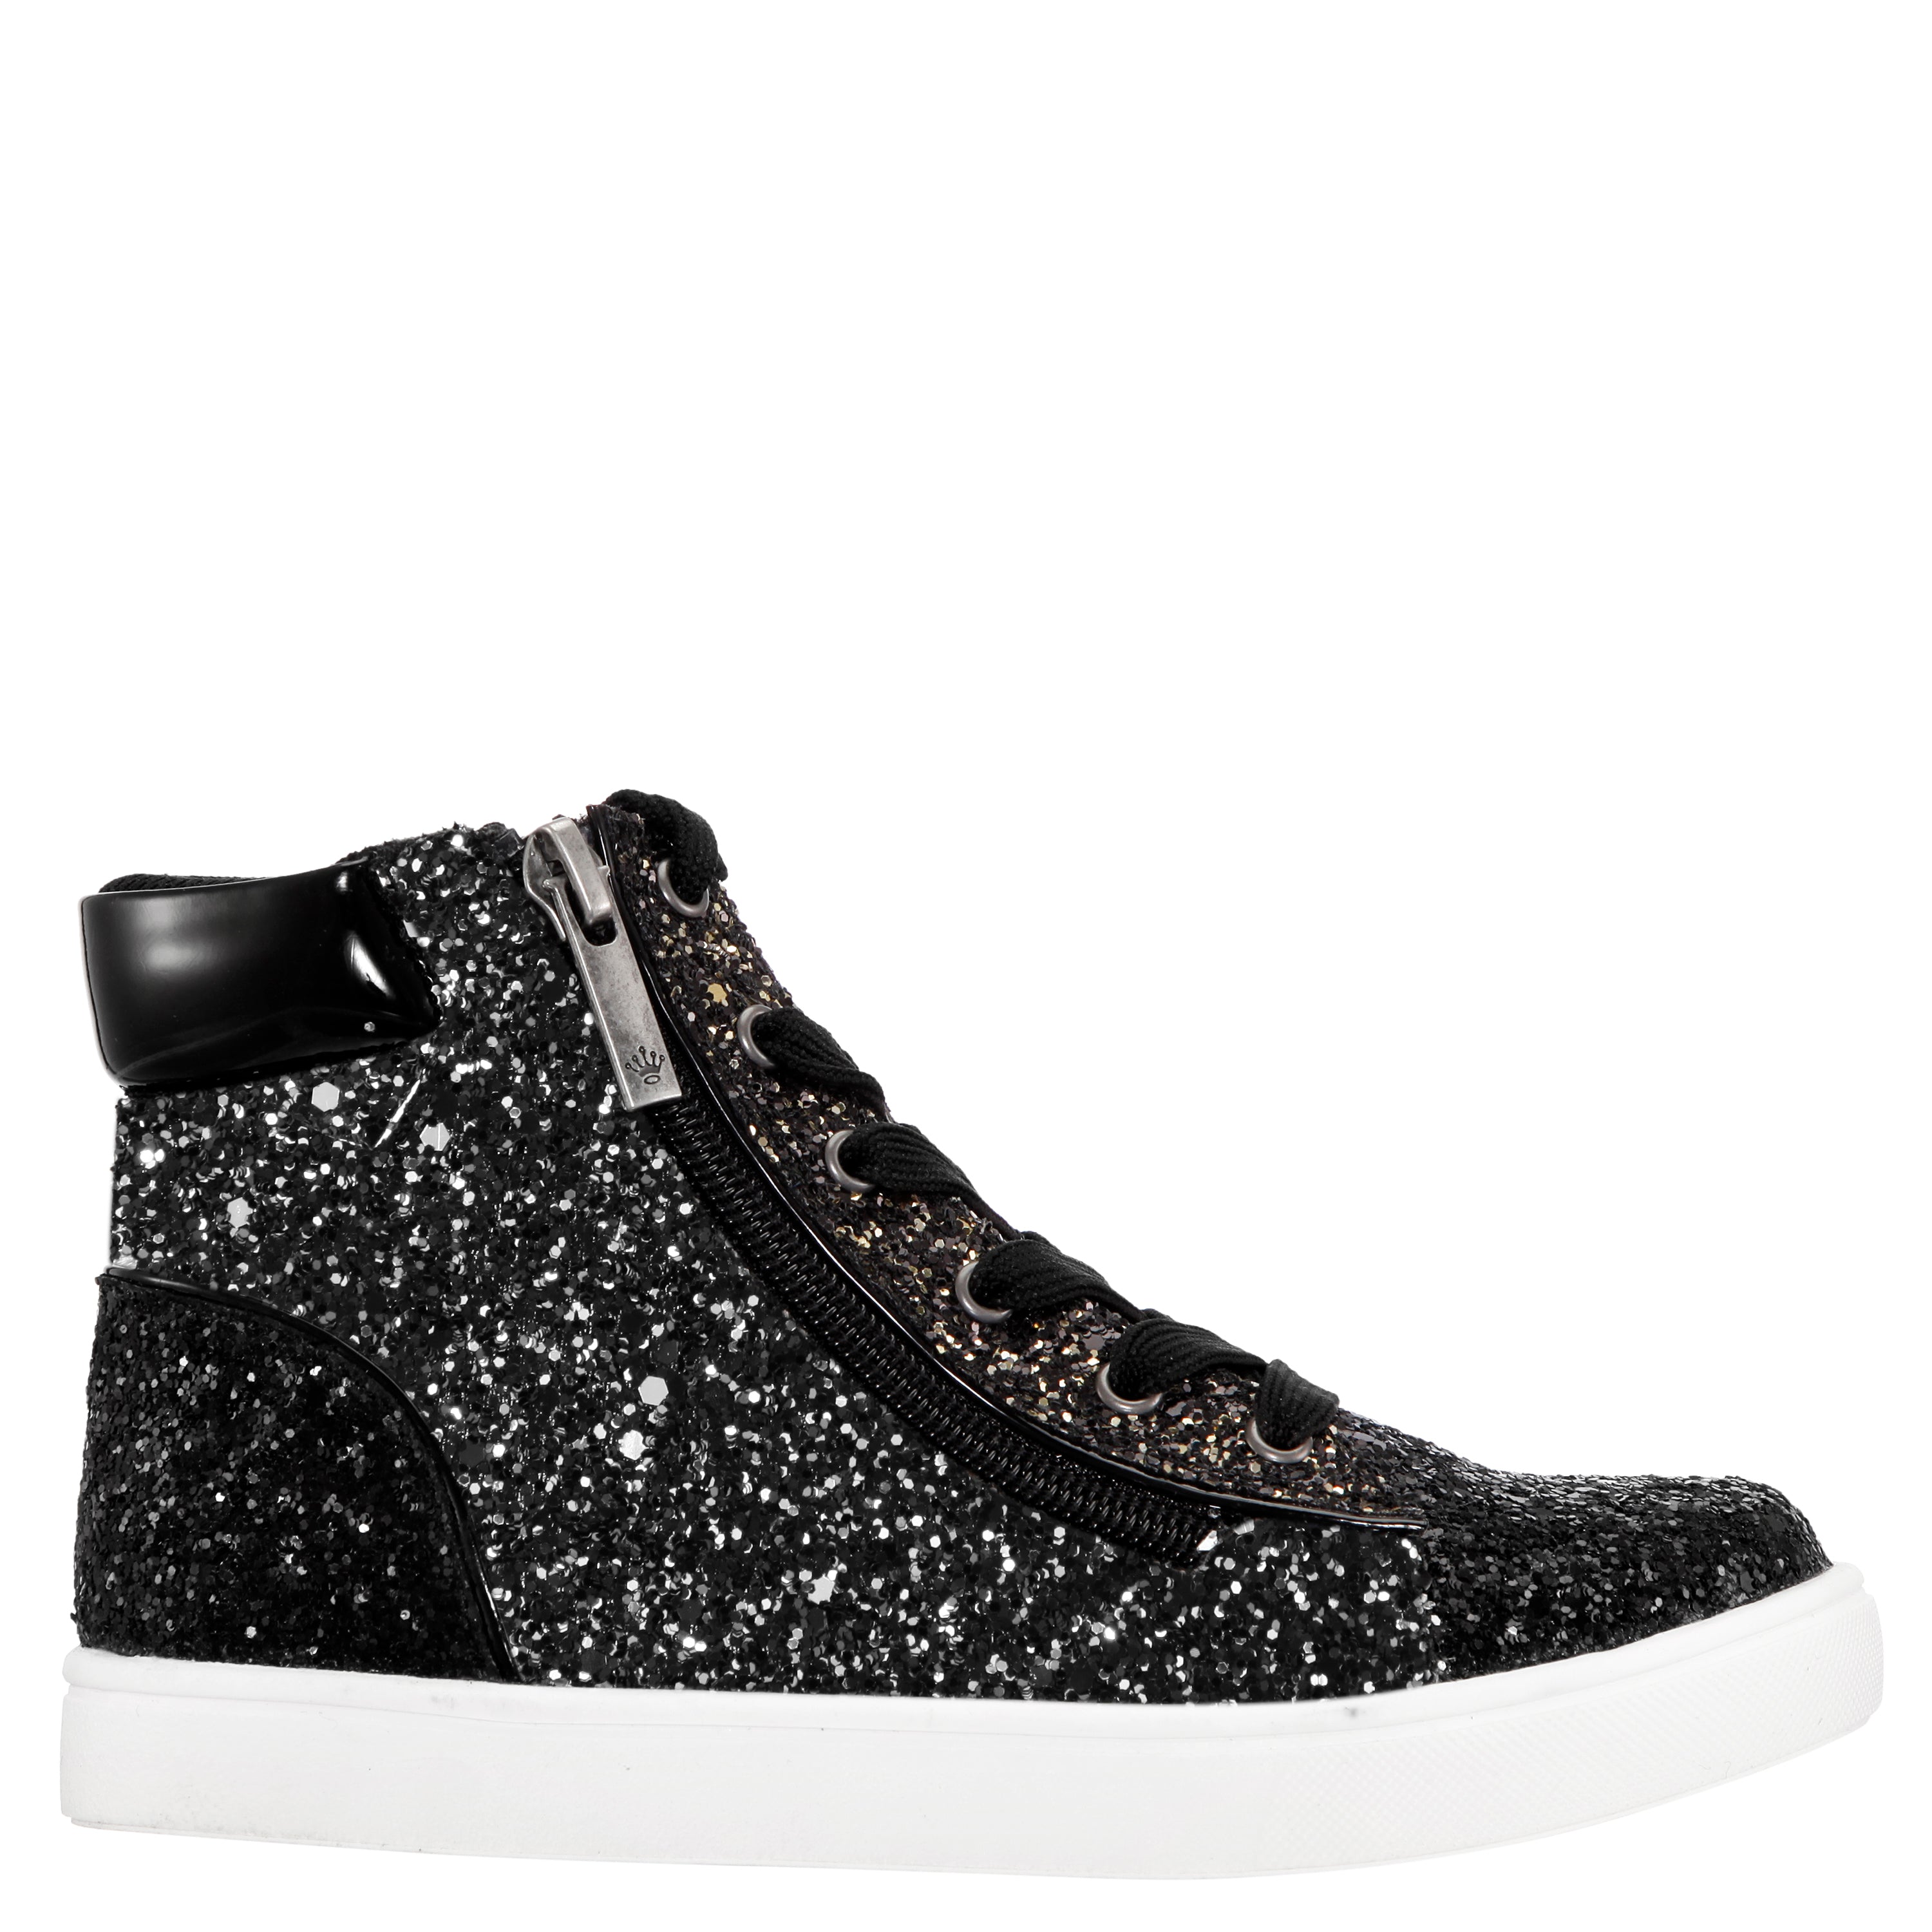 Desta Hi-Top Sneaker - Black Glitter